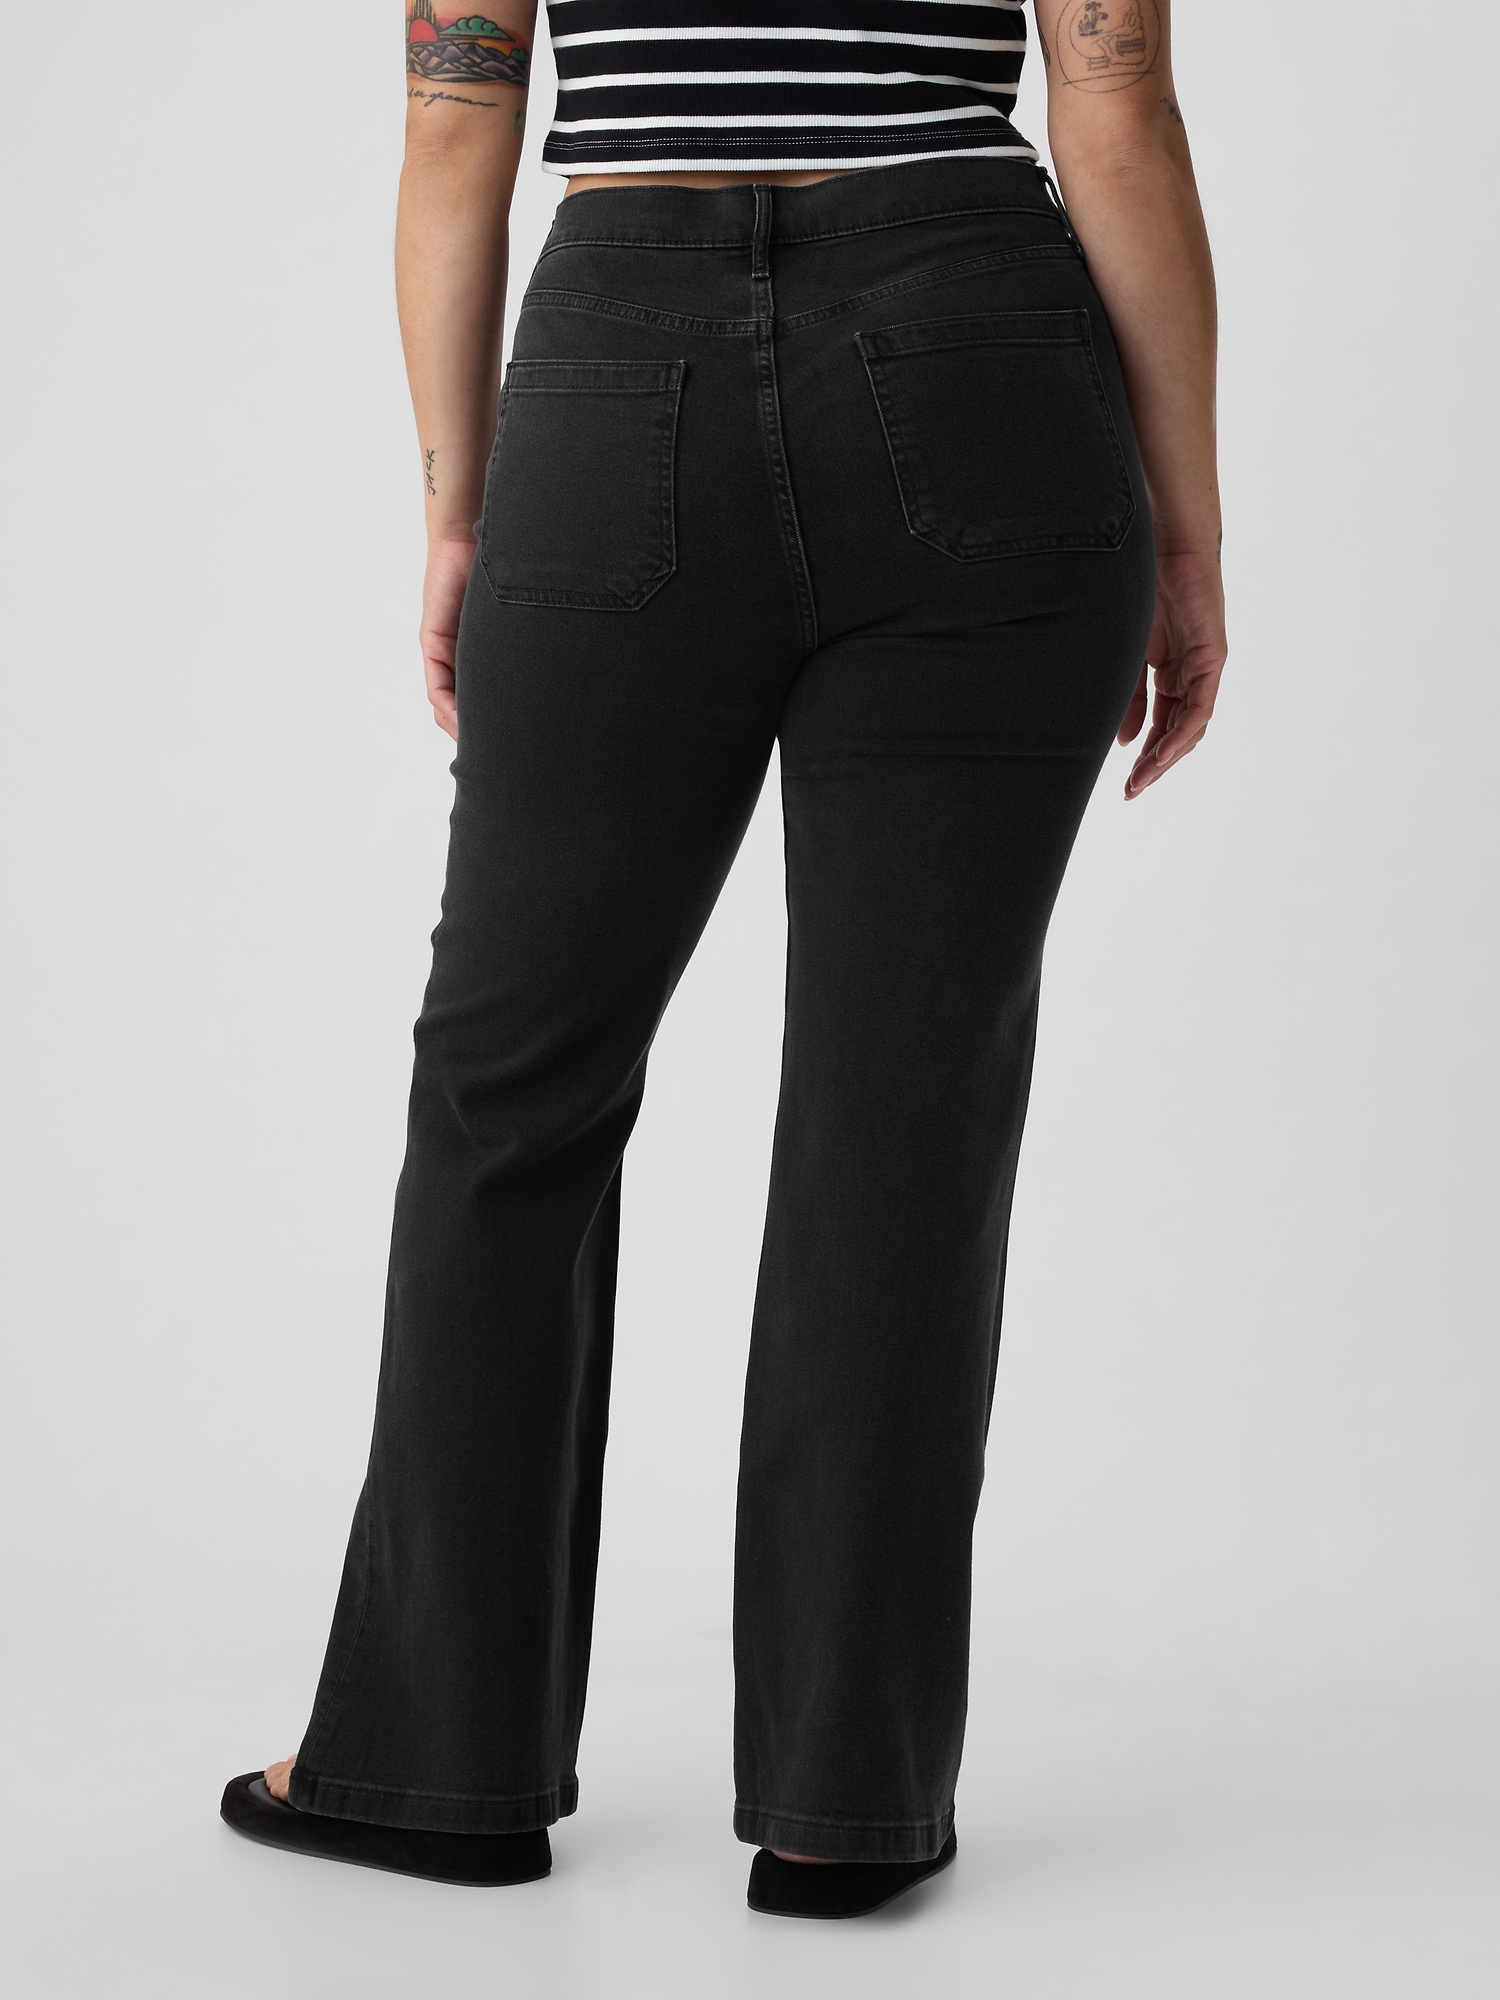 Custom 70s Inspired Girls Bell Bottom Jeans Too Groovy Jeans